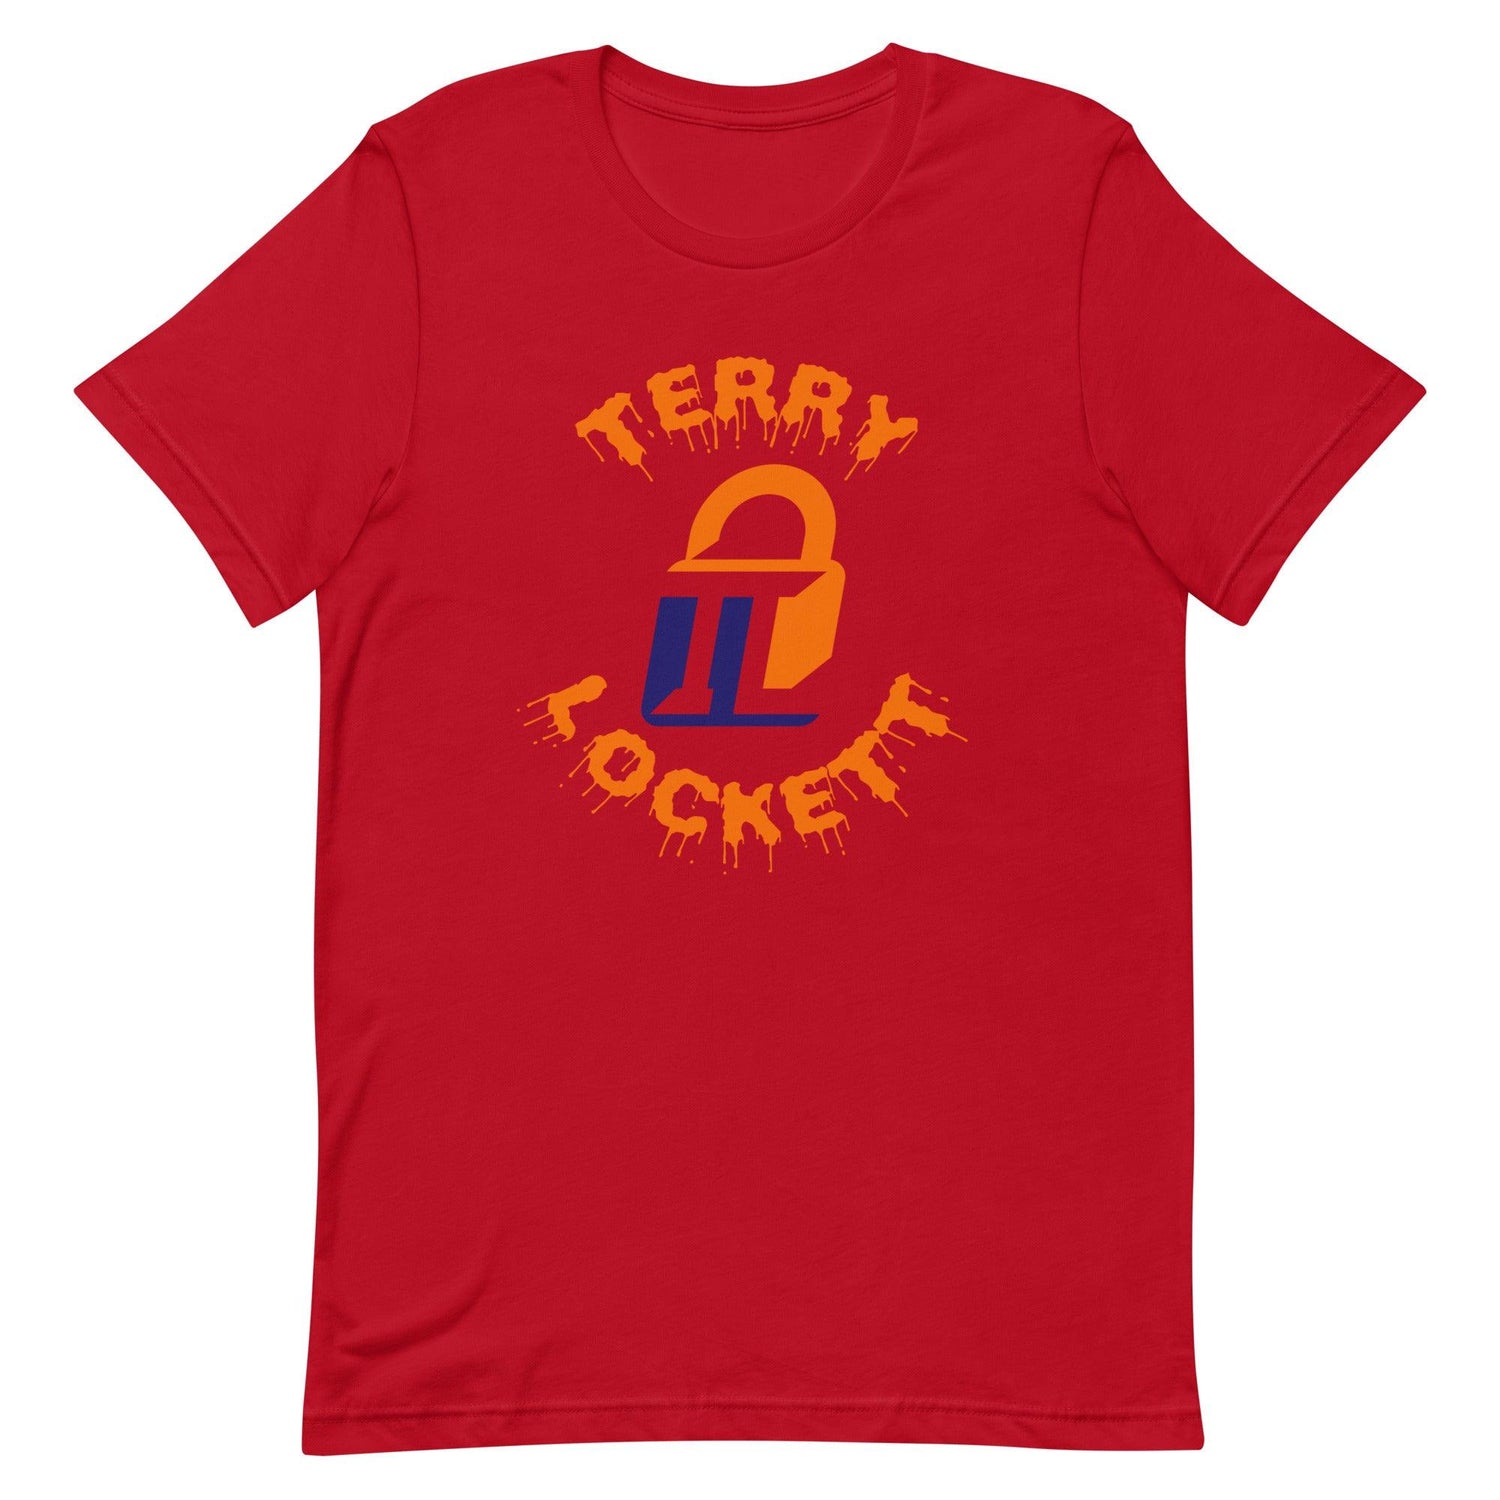 Terry Lockett "Elite" t-shirt - Fan Arch